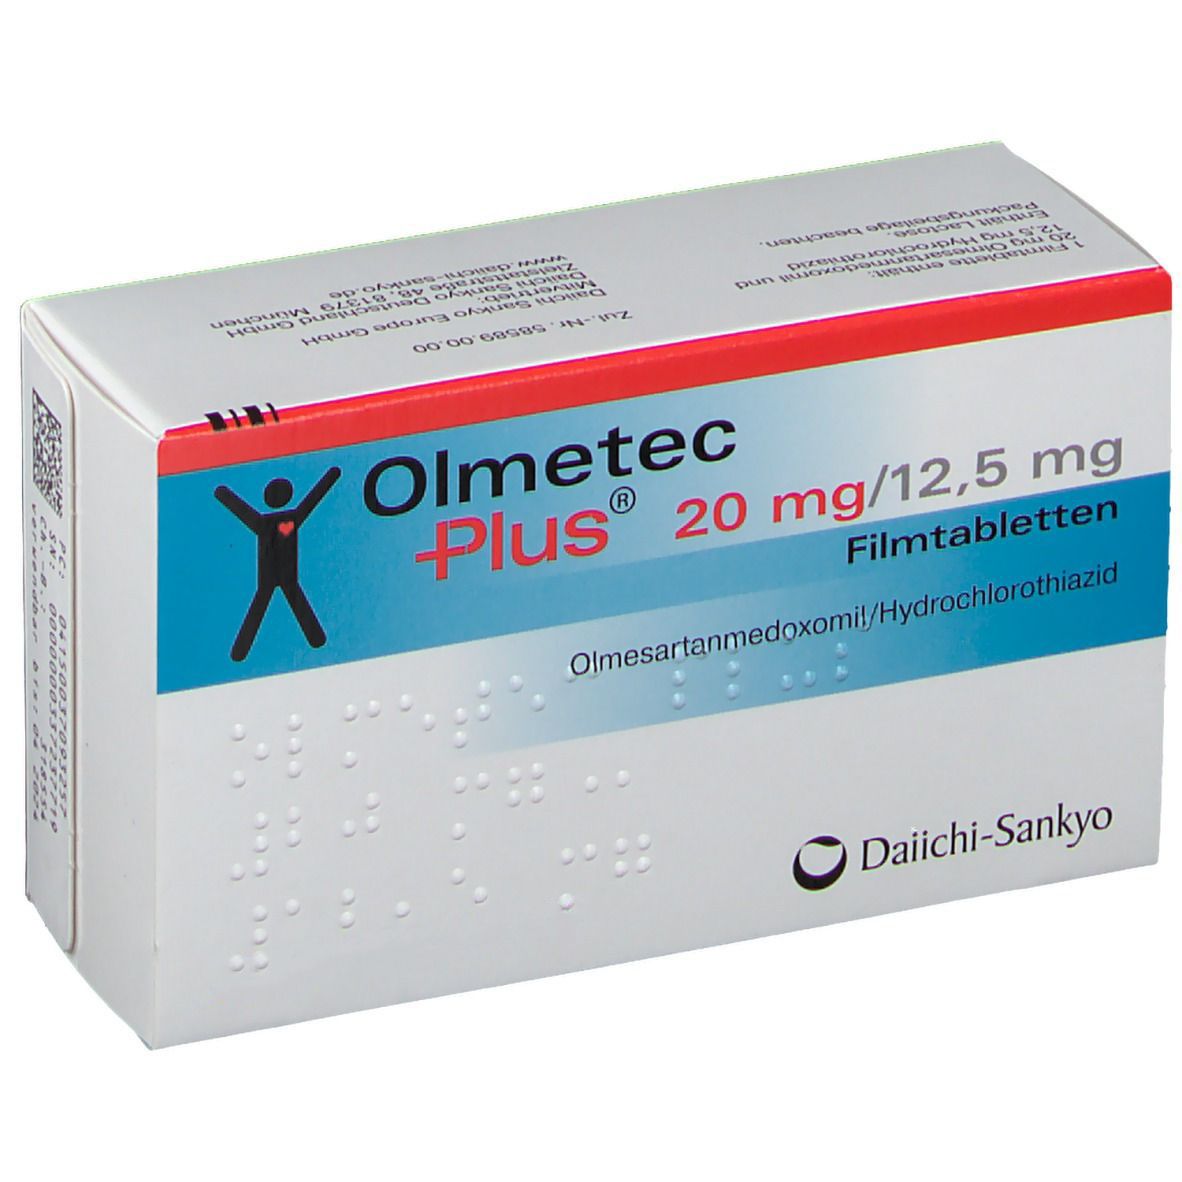 Olmetec Plus® 20 mg/12,5 mg